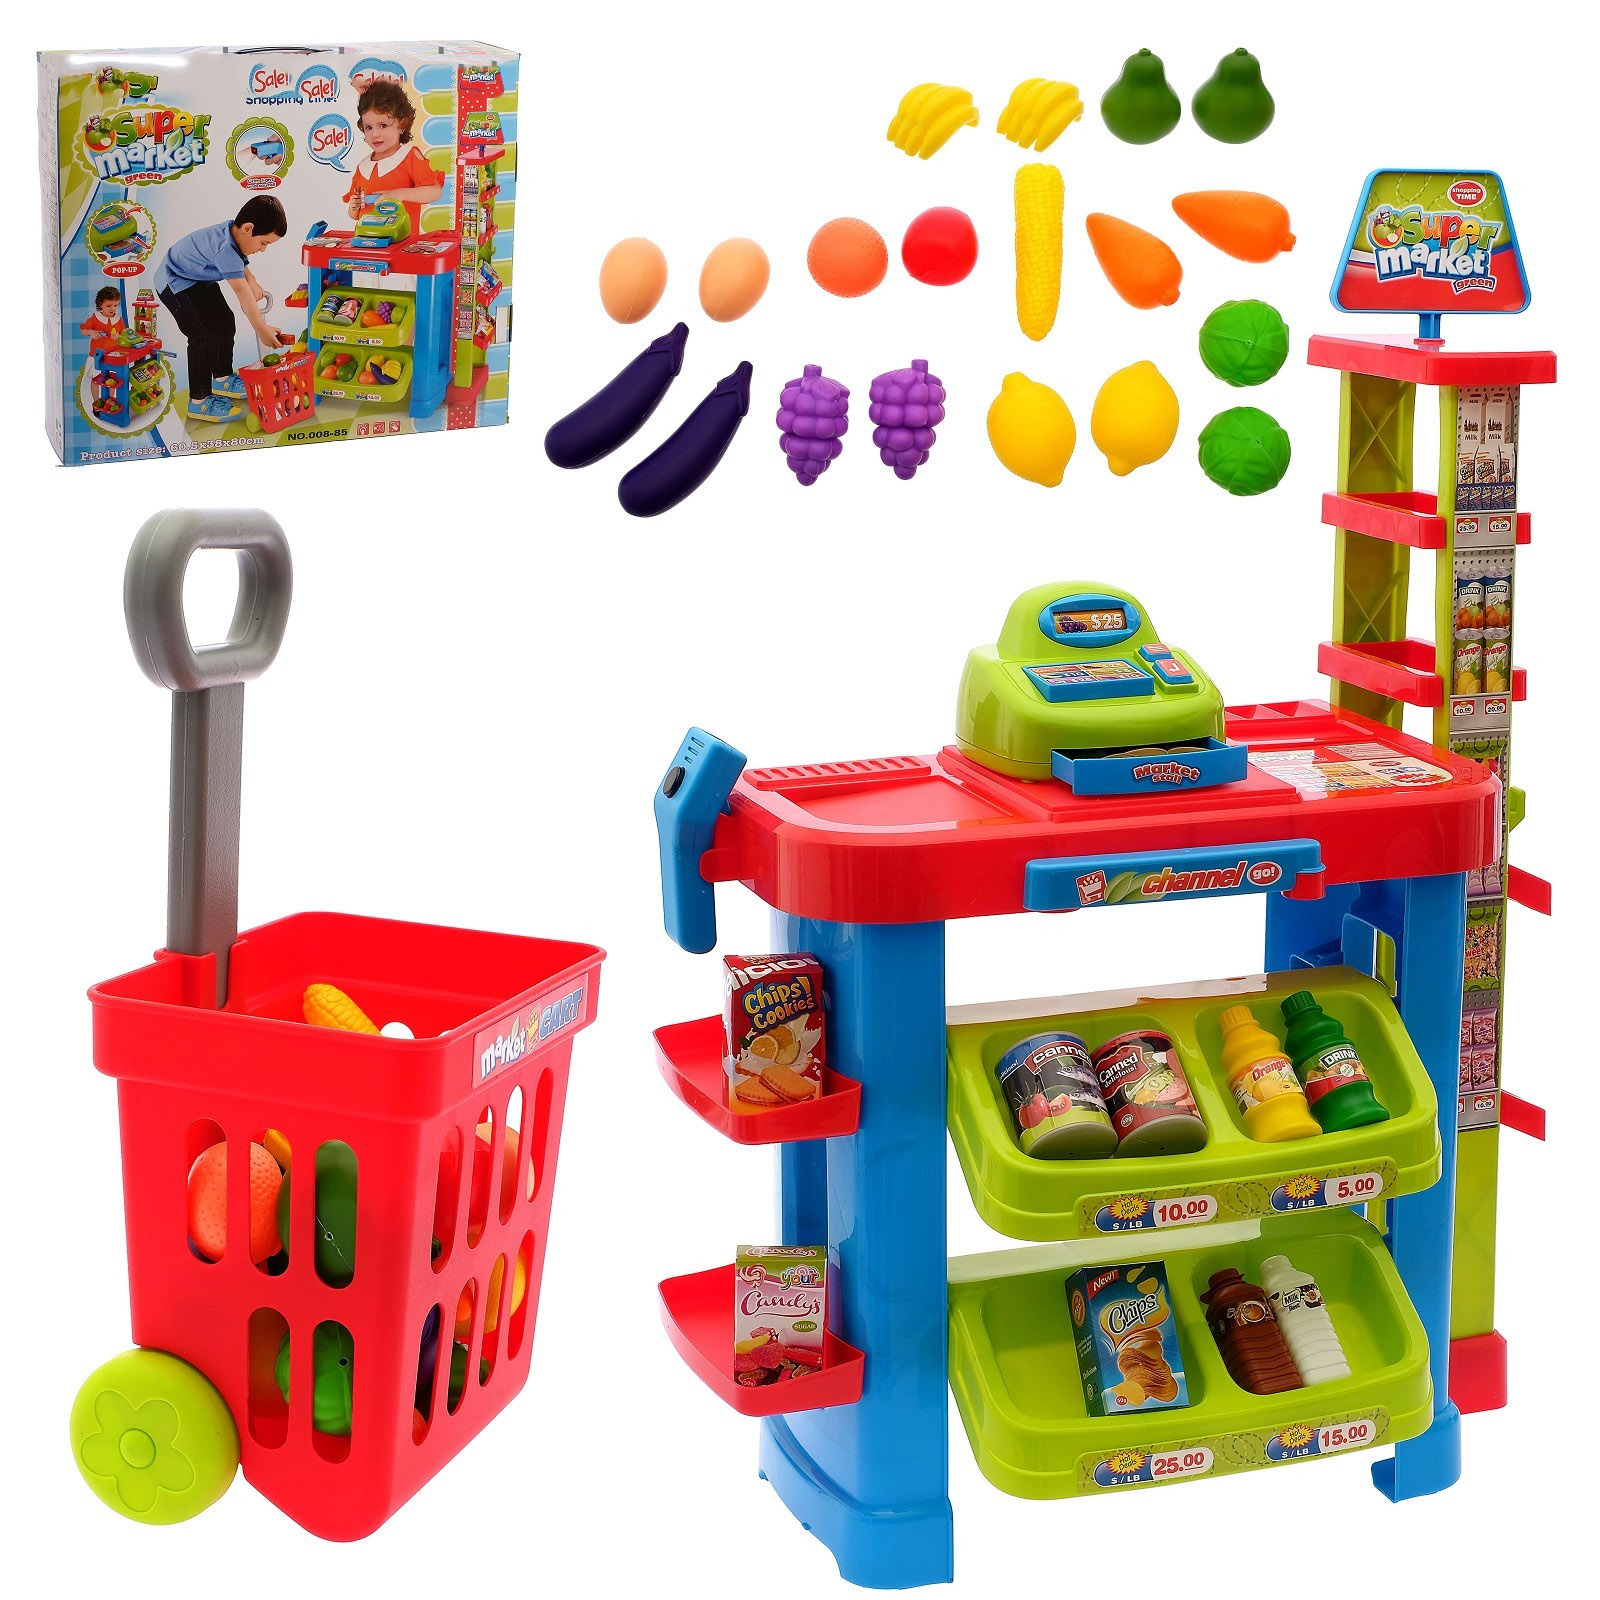 Мужские игры магазин. Игрушки для детского сада. Игровой набор магазин. Набор игрушек для детей. Игровые наборы для детей.